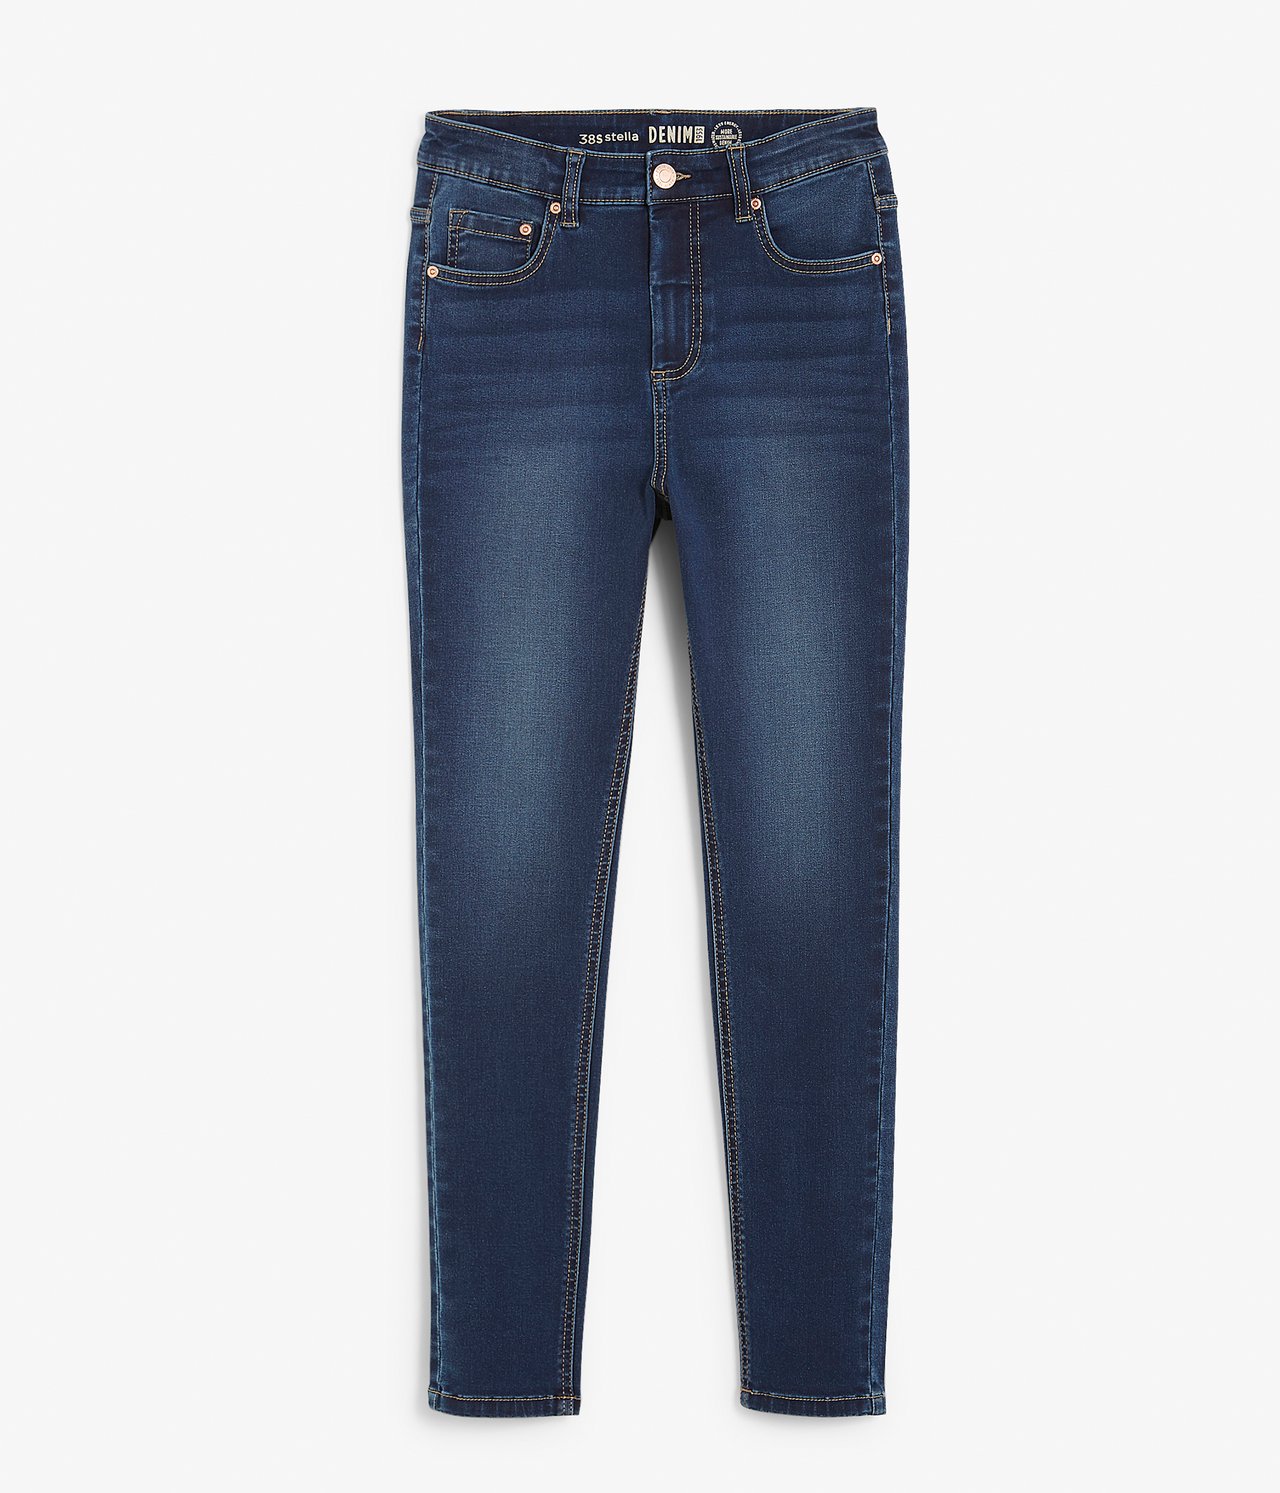 Super slim jeans short leg Mörk denim - null - 1